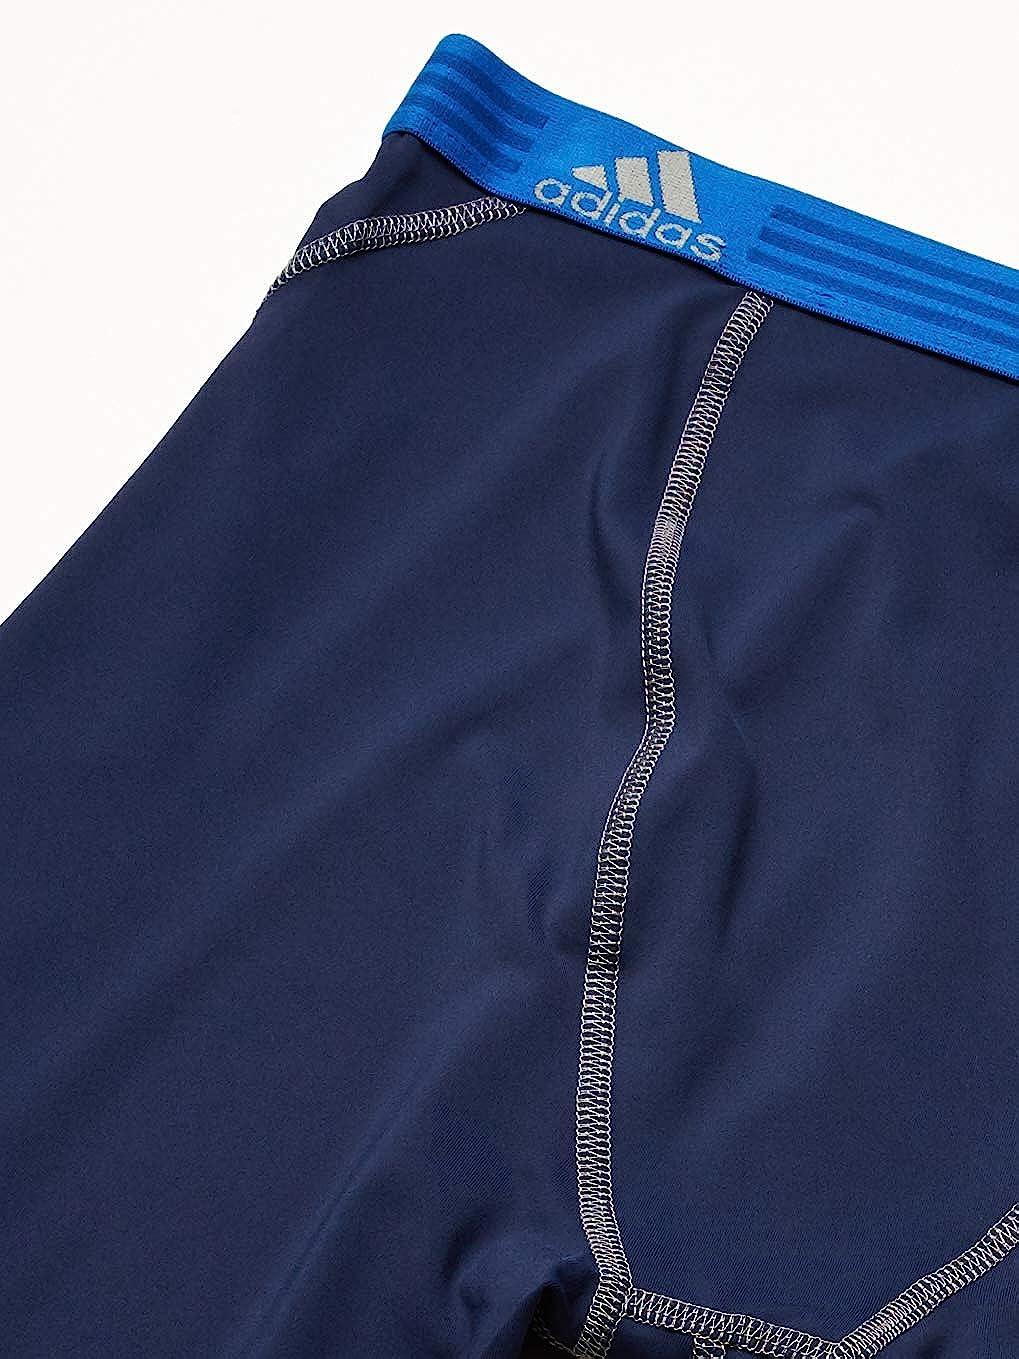 adidas Men's Sport Performance Climalite Boxer Briefs Underwear (2